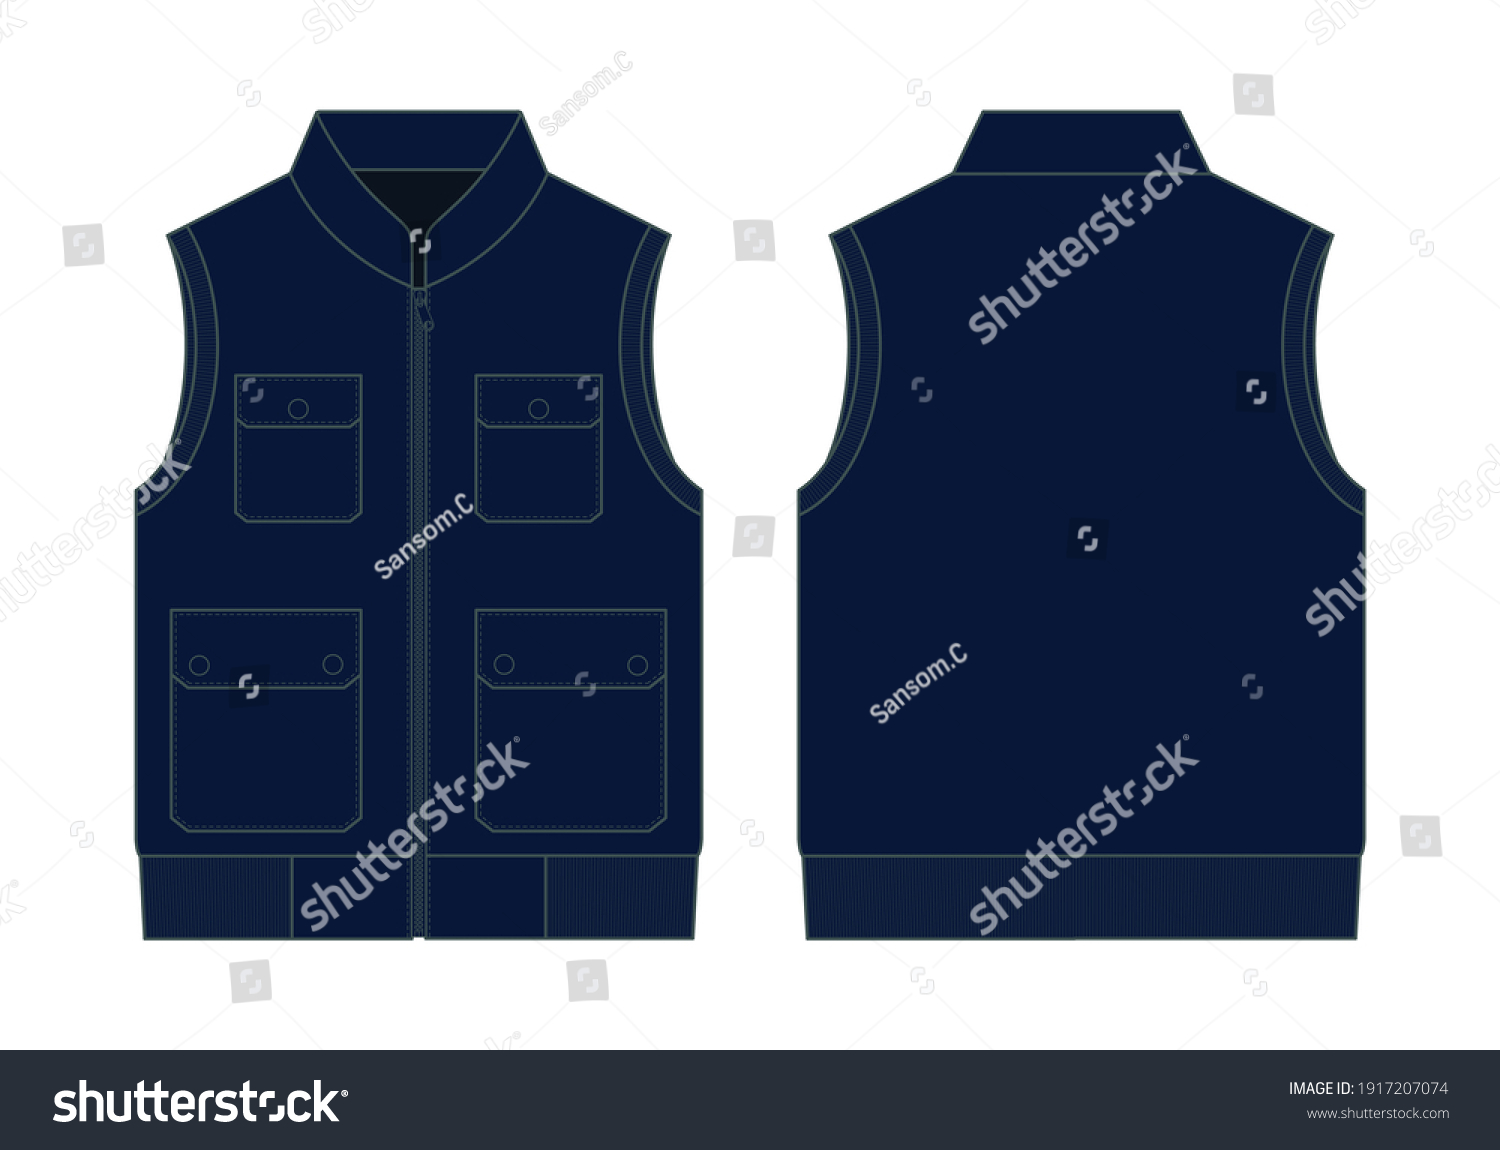 1,431 Blue pocket vest Images, Stock Photos & Vectors | Shutterstock